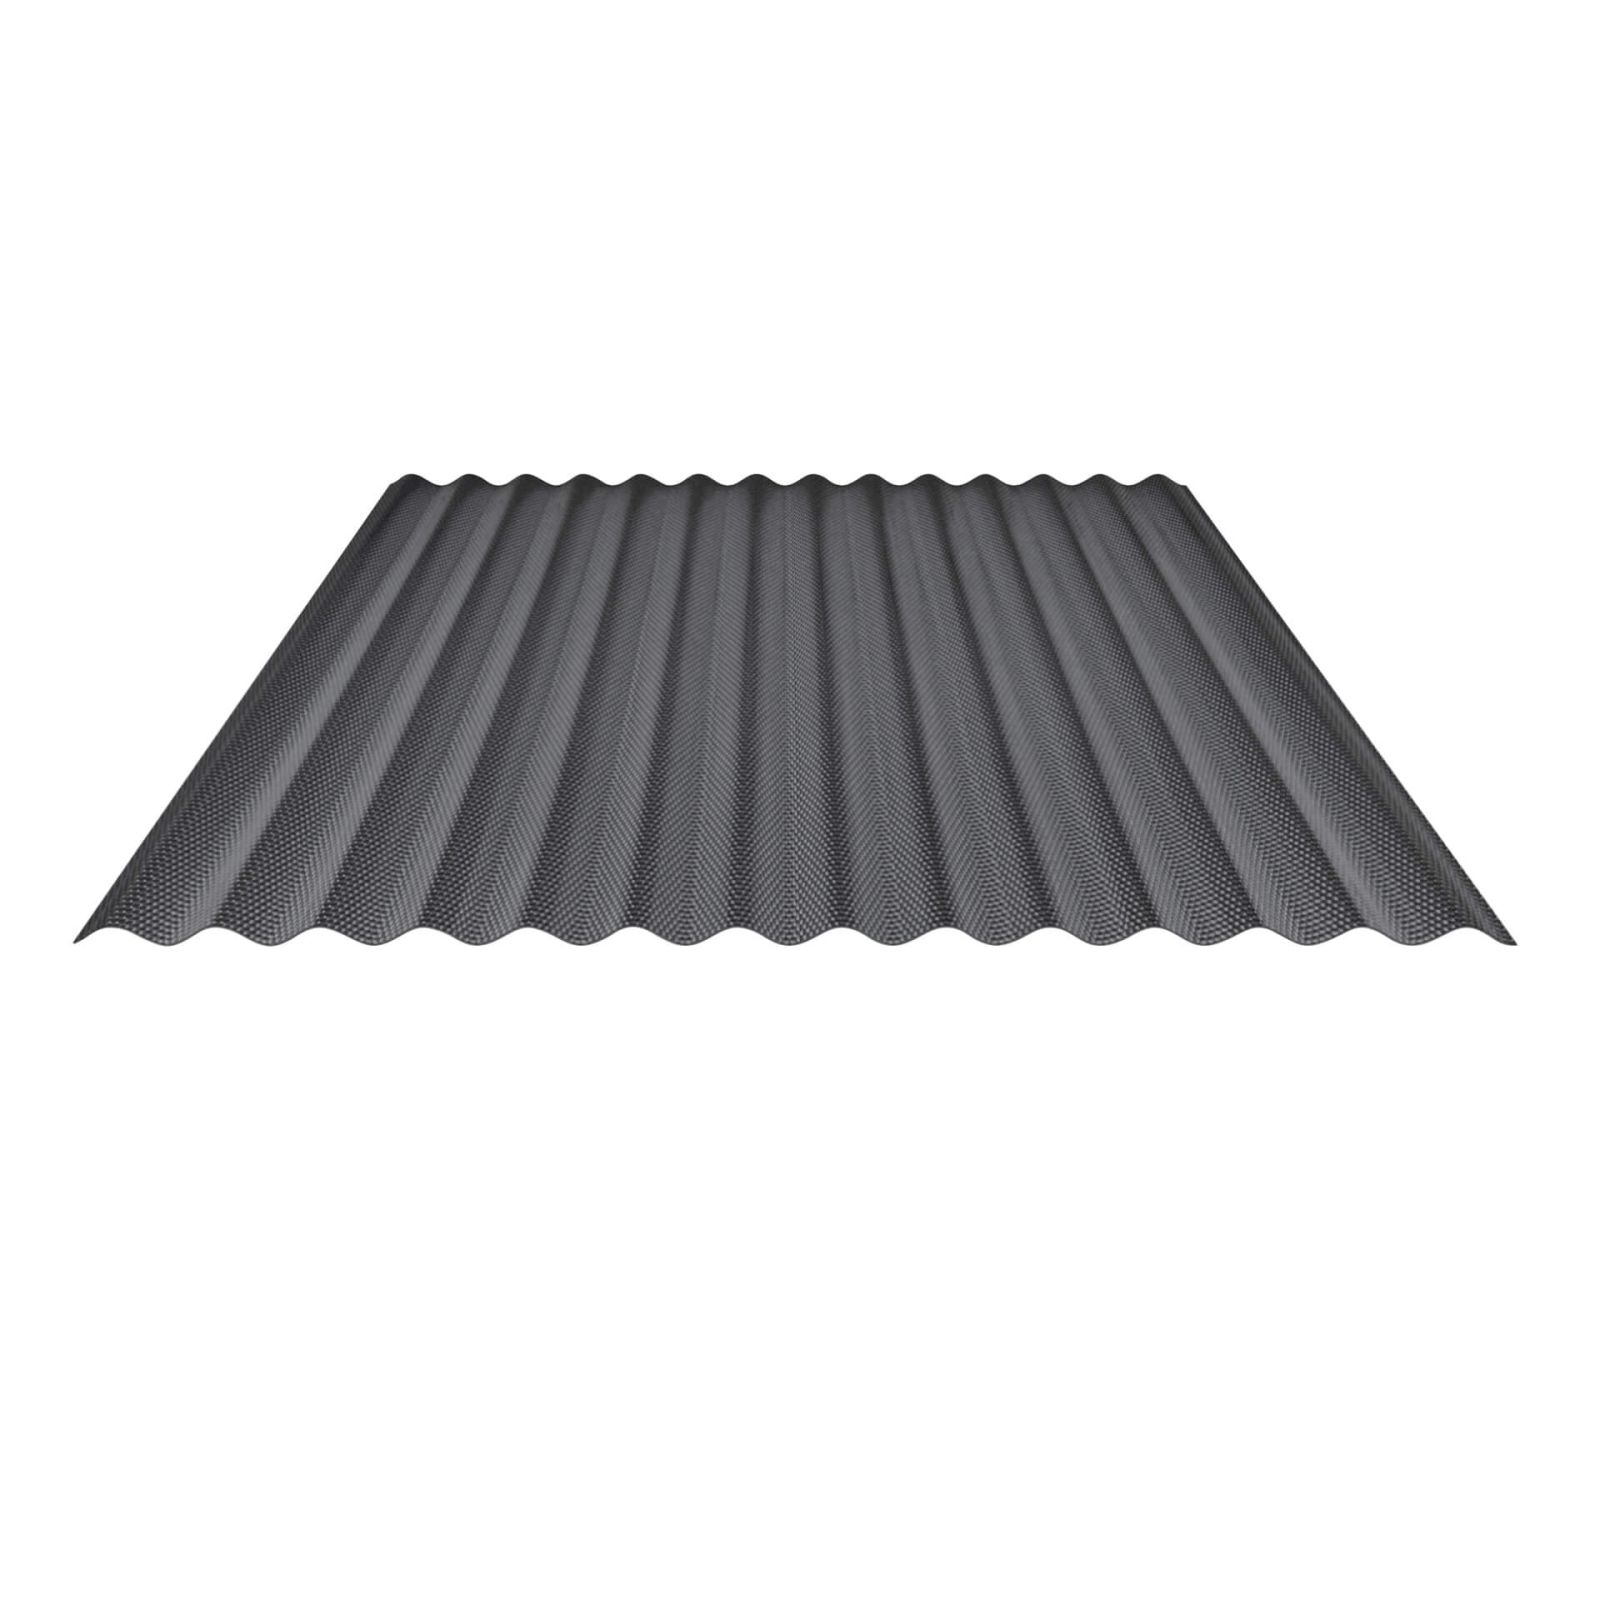 Zoom Modal | PVC Wellplatte | 76/18 | 2,50 mm | Grau | Wabenstruktur | 500 mm | 0